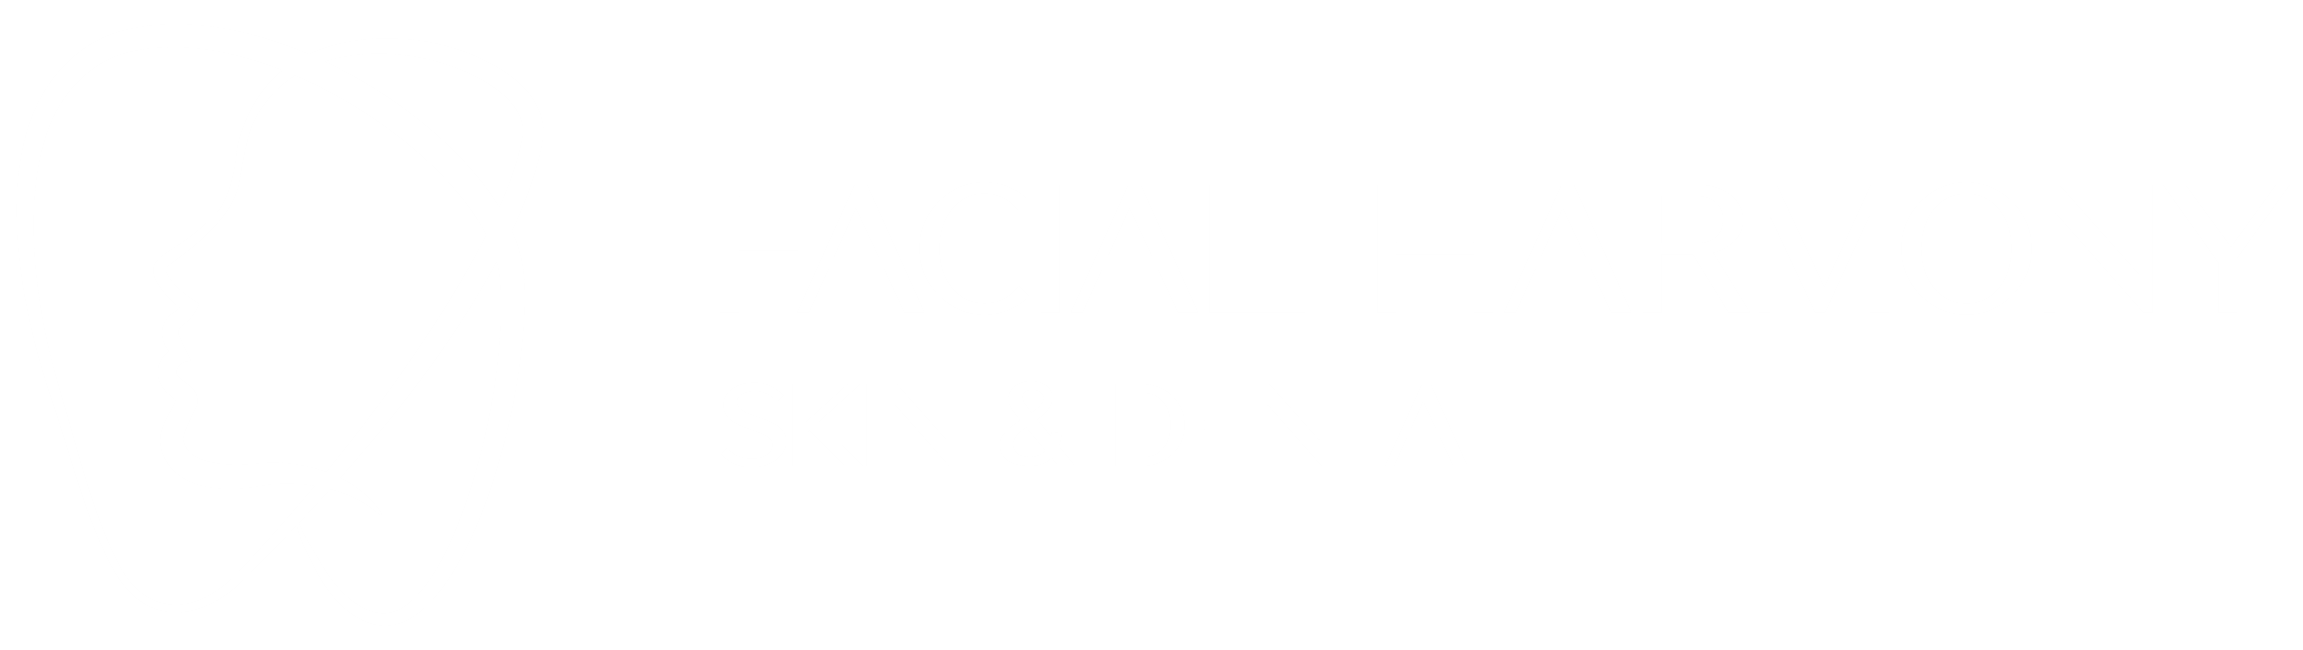 Facial Harmony Skin & Dental